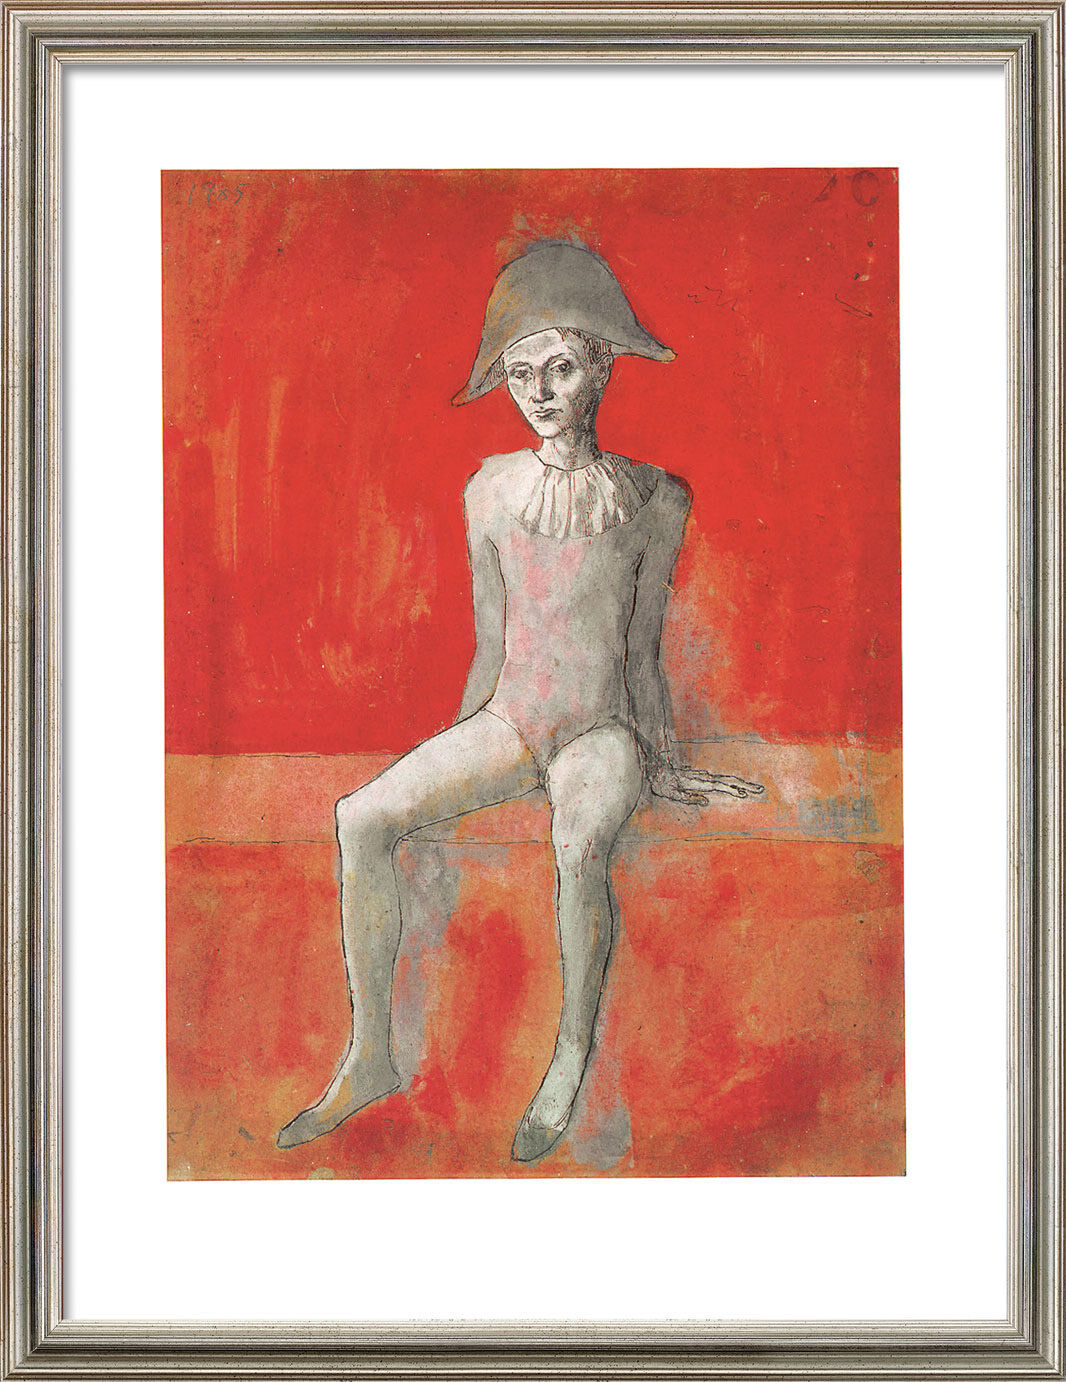 Bild "Sitzender Harlekin" (1905), gerahmt von Pablo Picasso